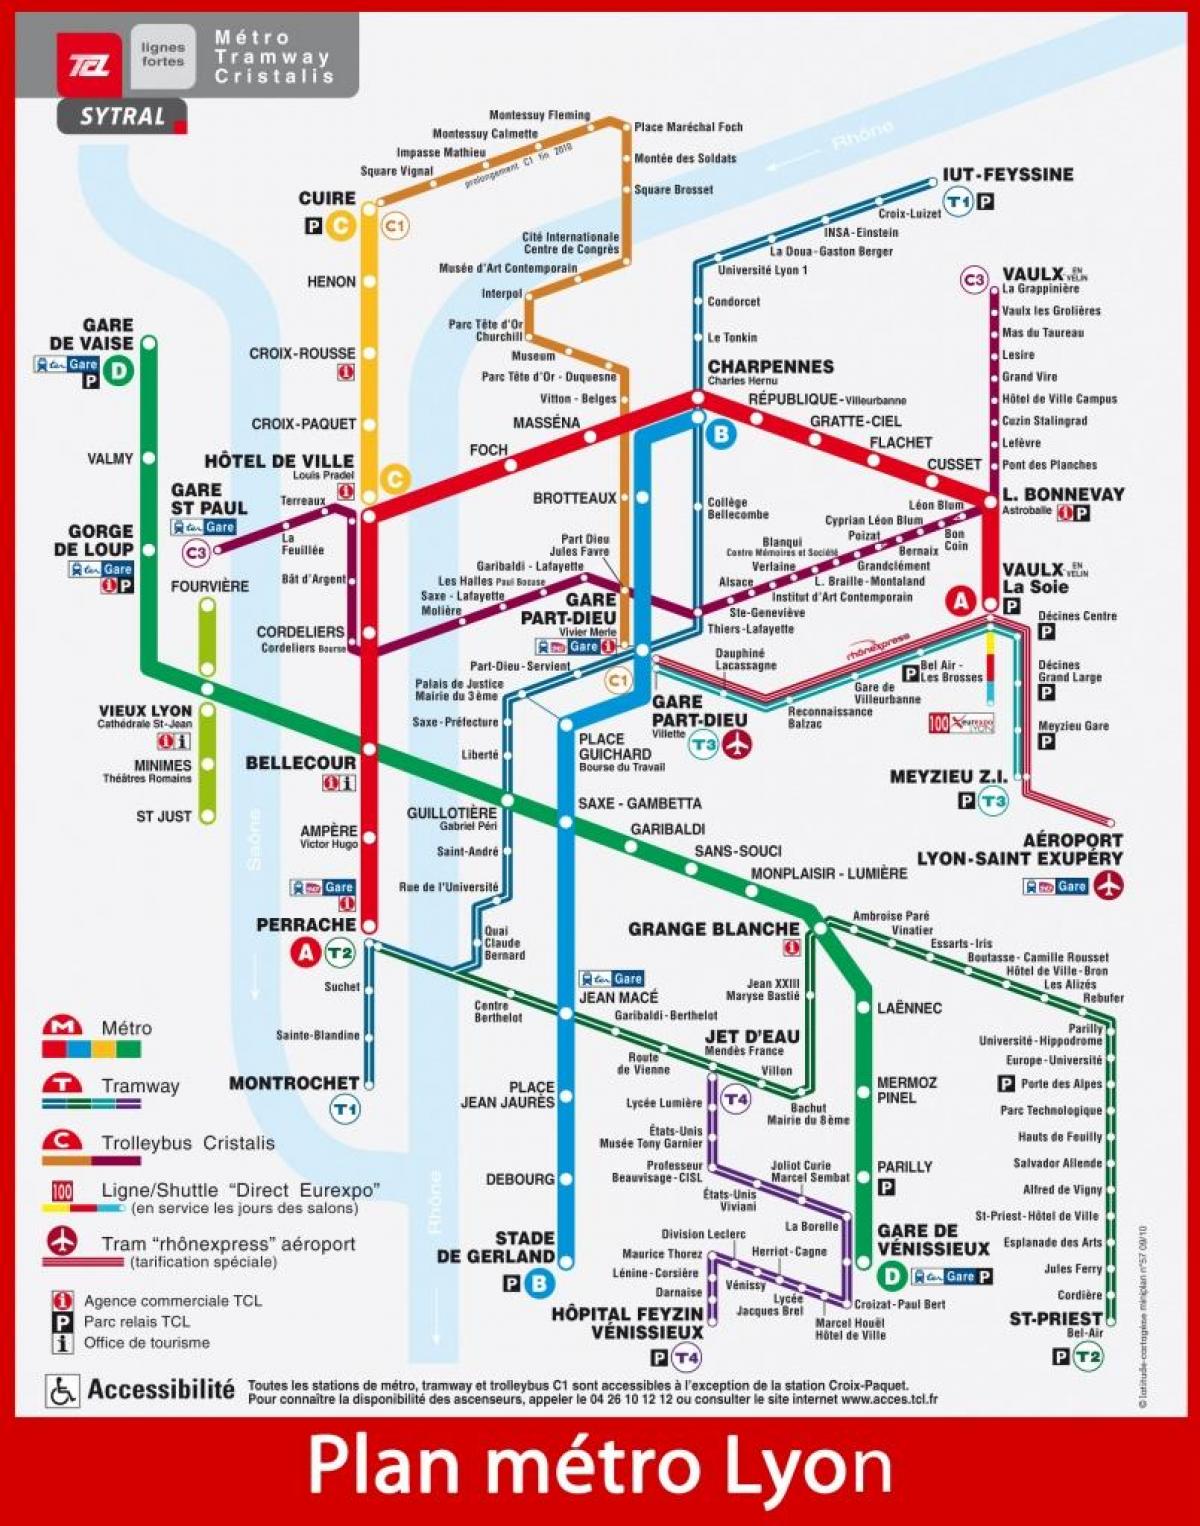 map of tlc Lyon